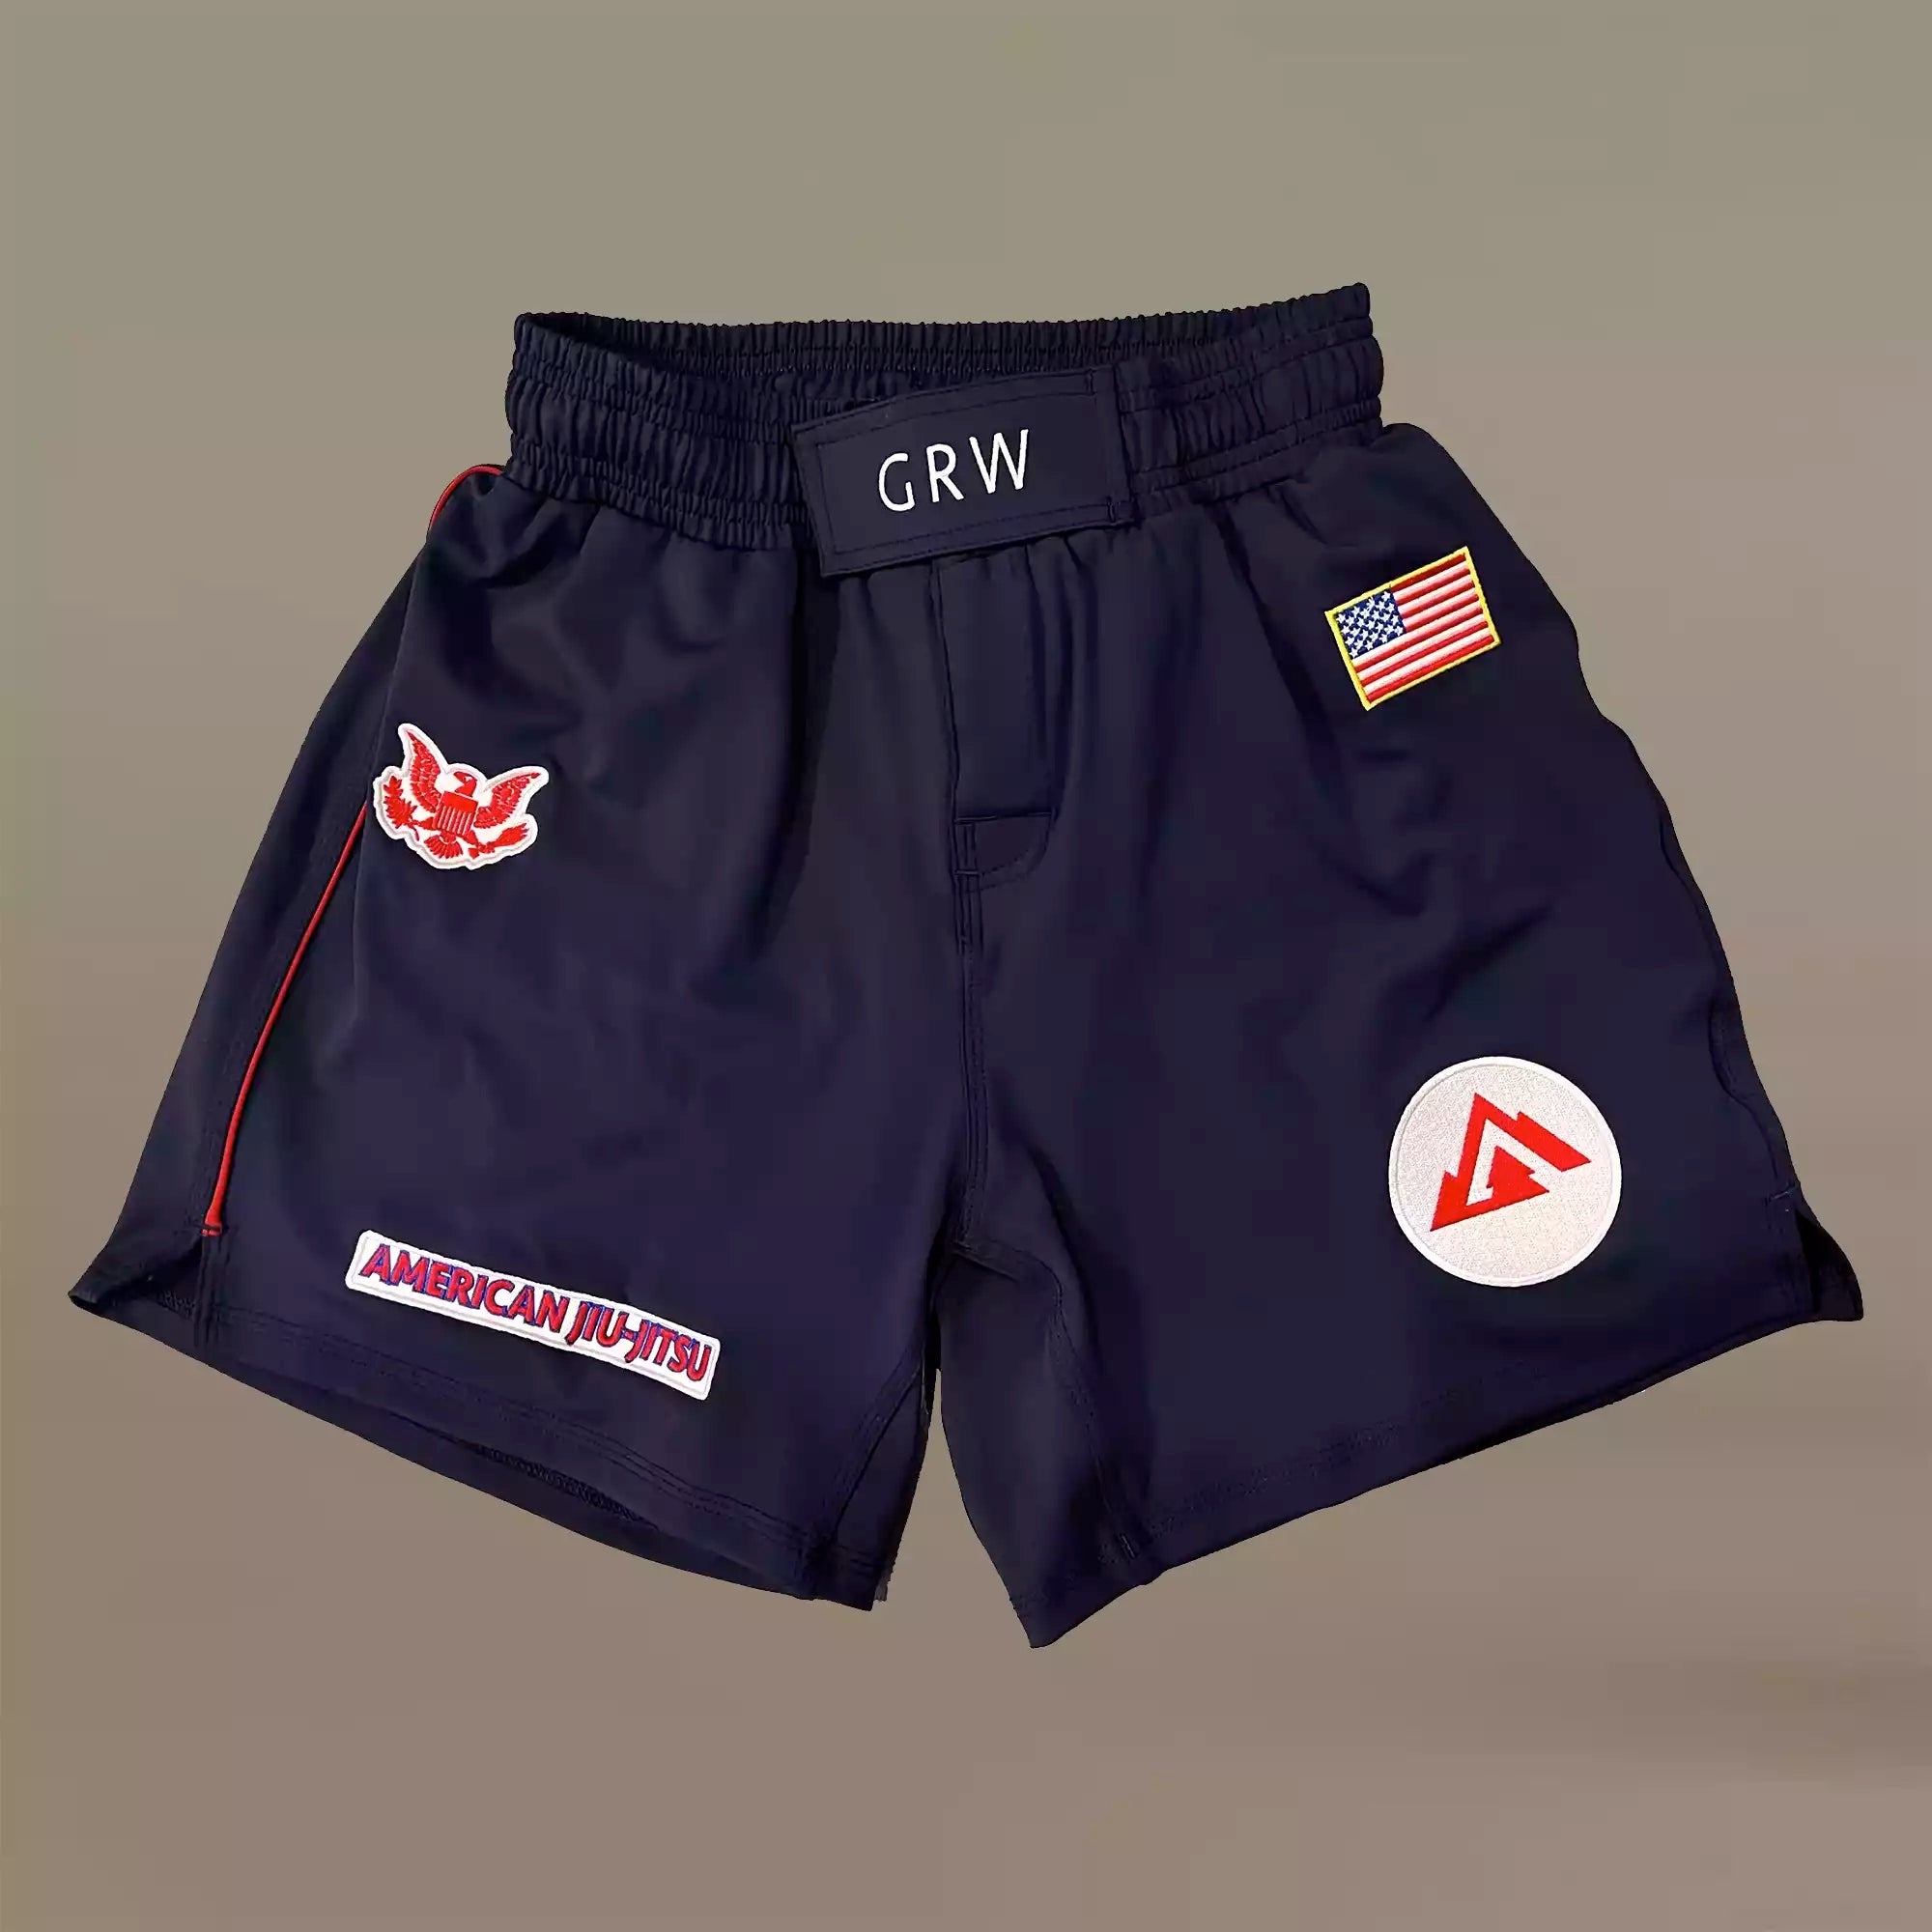 GRW American jiu jitsu BJJ Fight Shorts Front